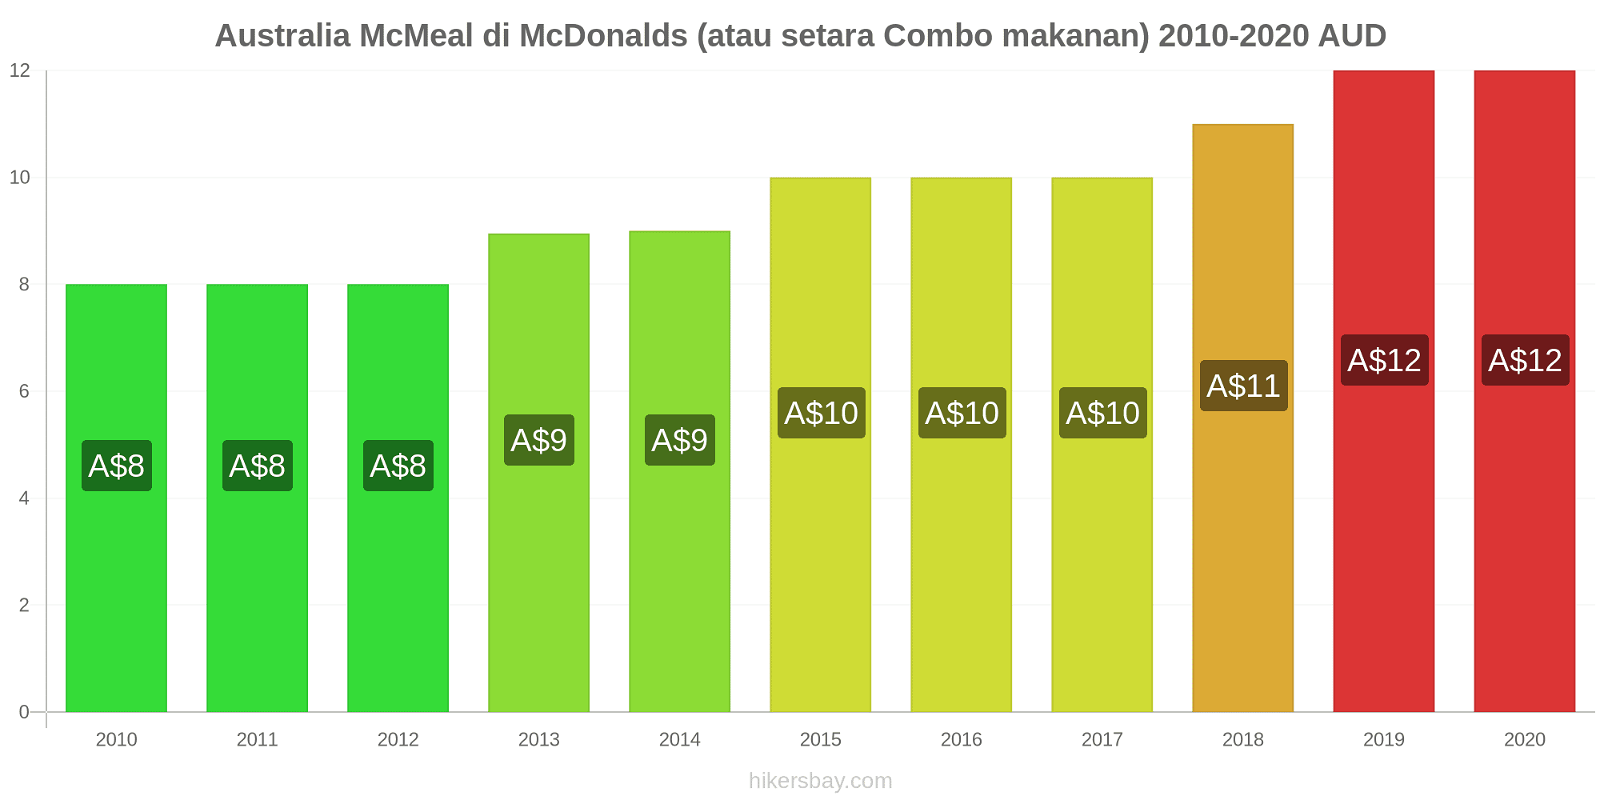 Australia perubahan harga McMeal di McDonalds (atau setara Combo makanan) hikersbay.com